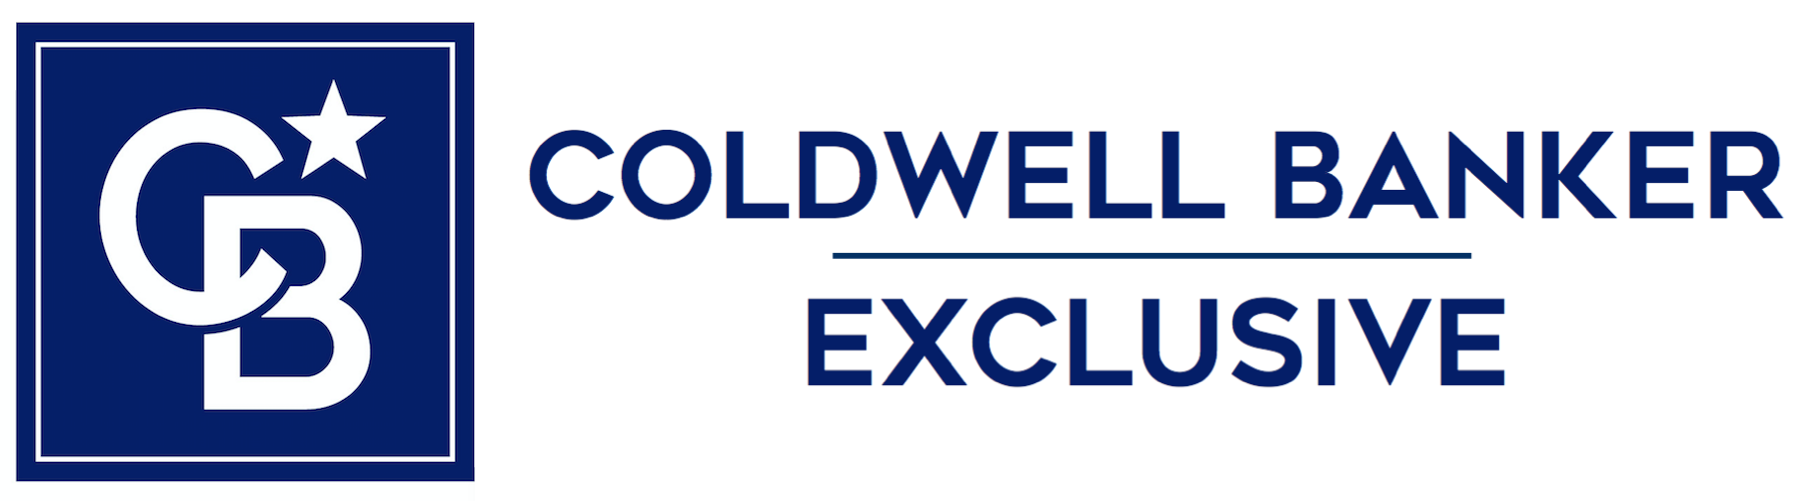 Coldwell Banker Exclusive Welcomes Top Real Estate Agent Haydeelyn De Dios